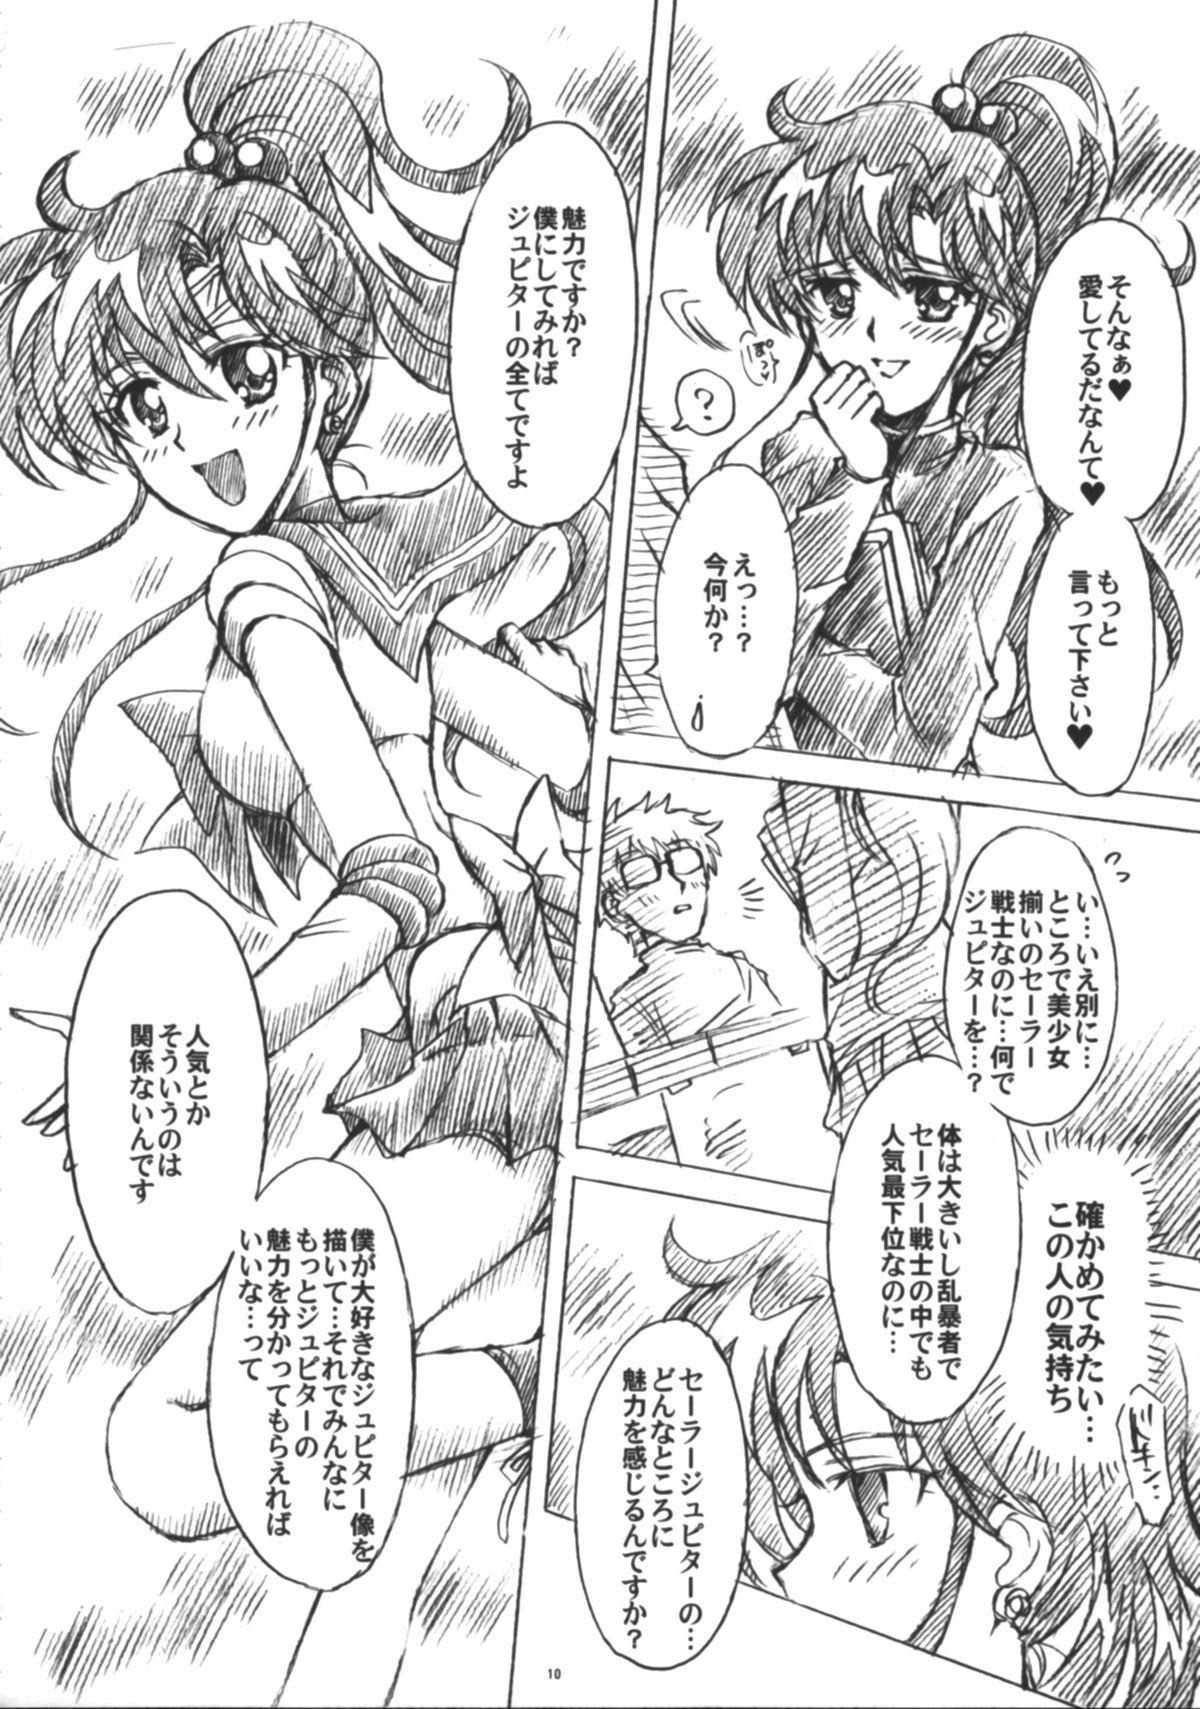 Pinay Boku no Kanojo wa Sailor Senshi 6 - Sailor moon Scandal - Page 11